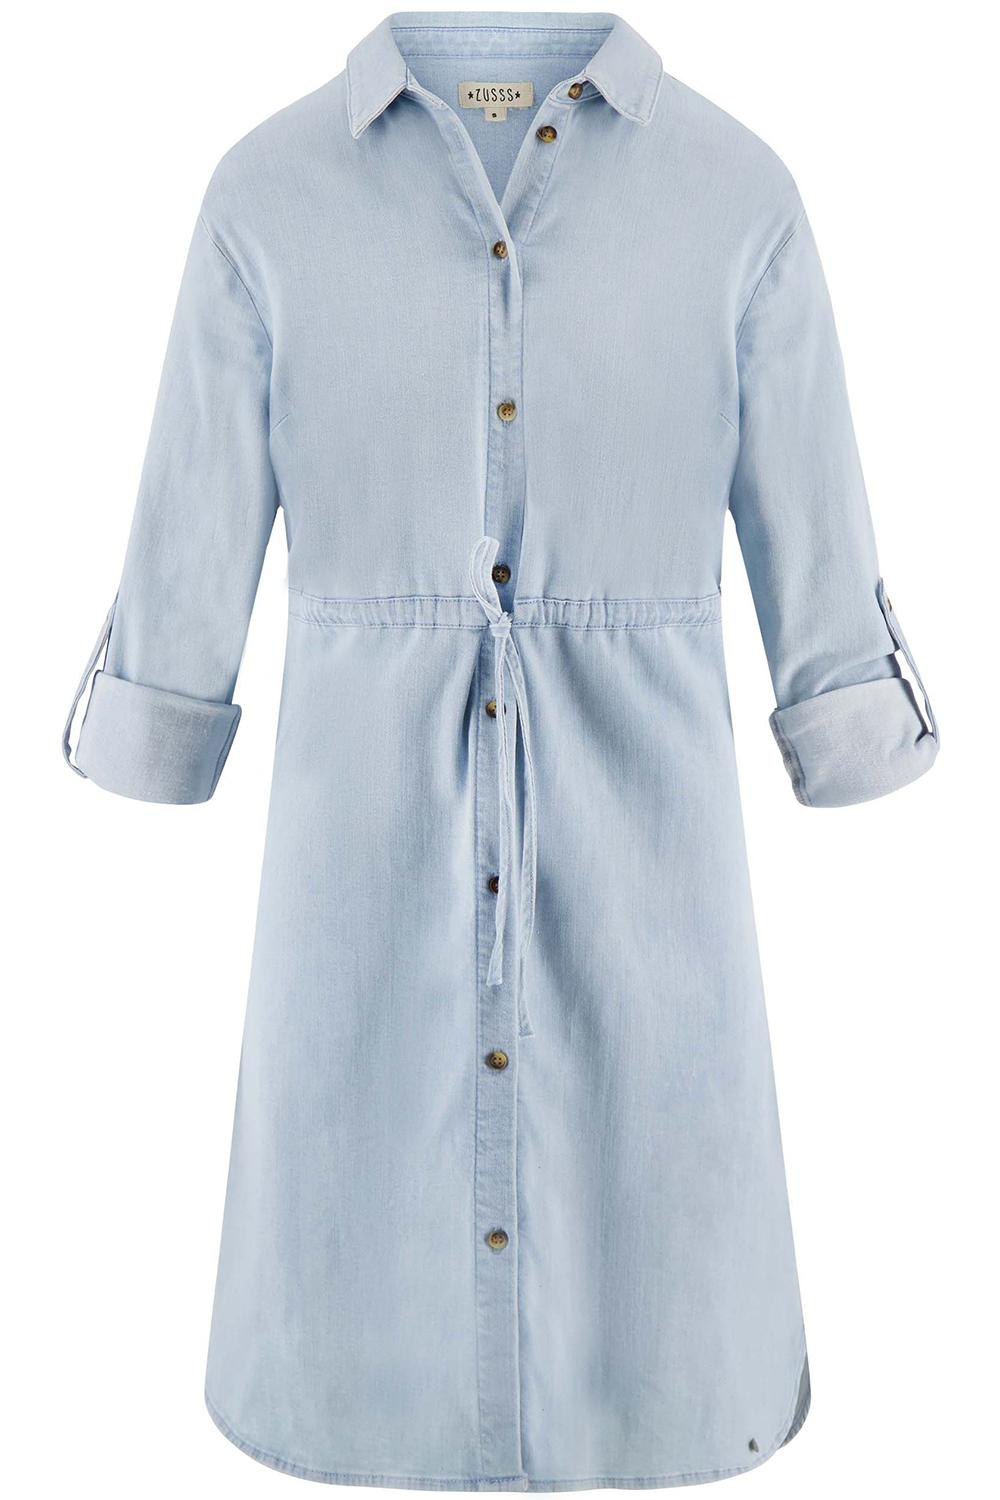 Beangstigend Bont Voorstel denim blousejurk 0301 044 4005 zusss jurk lichtblauw